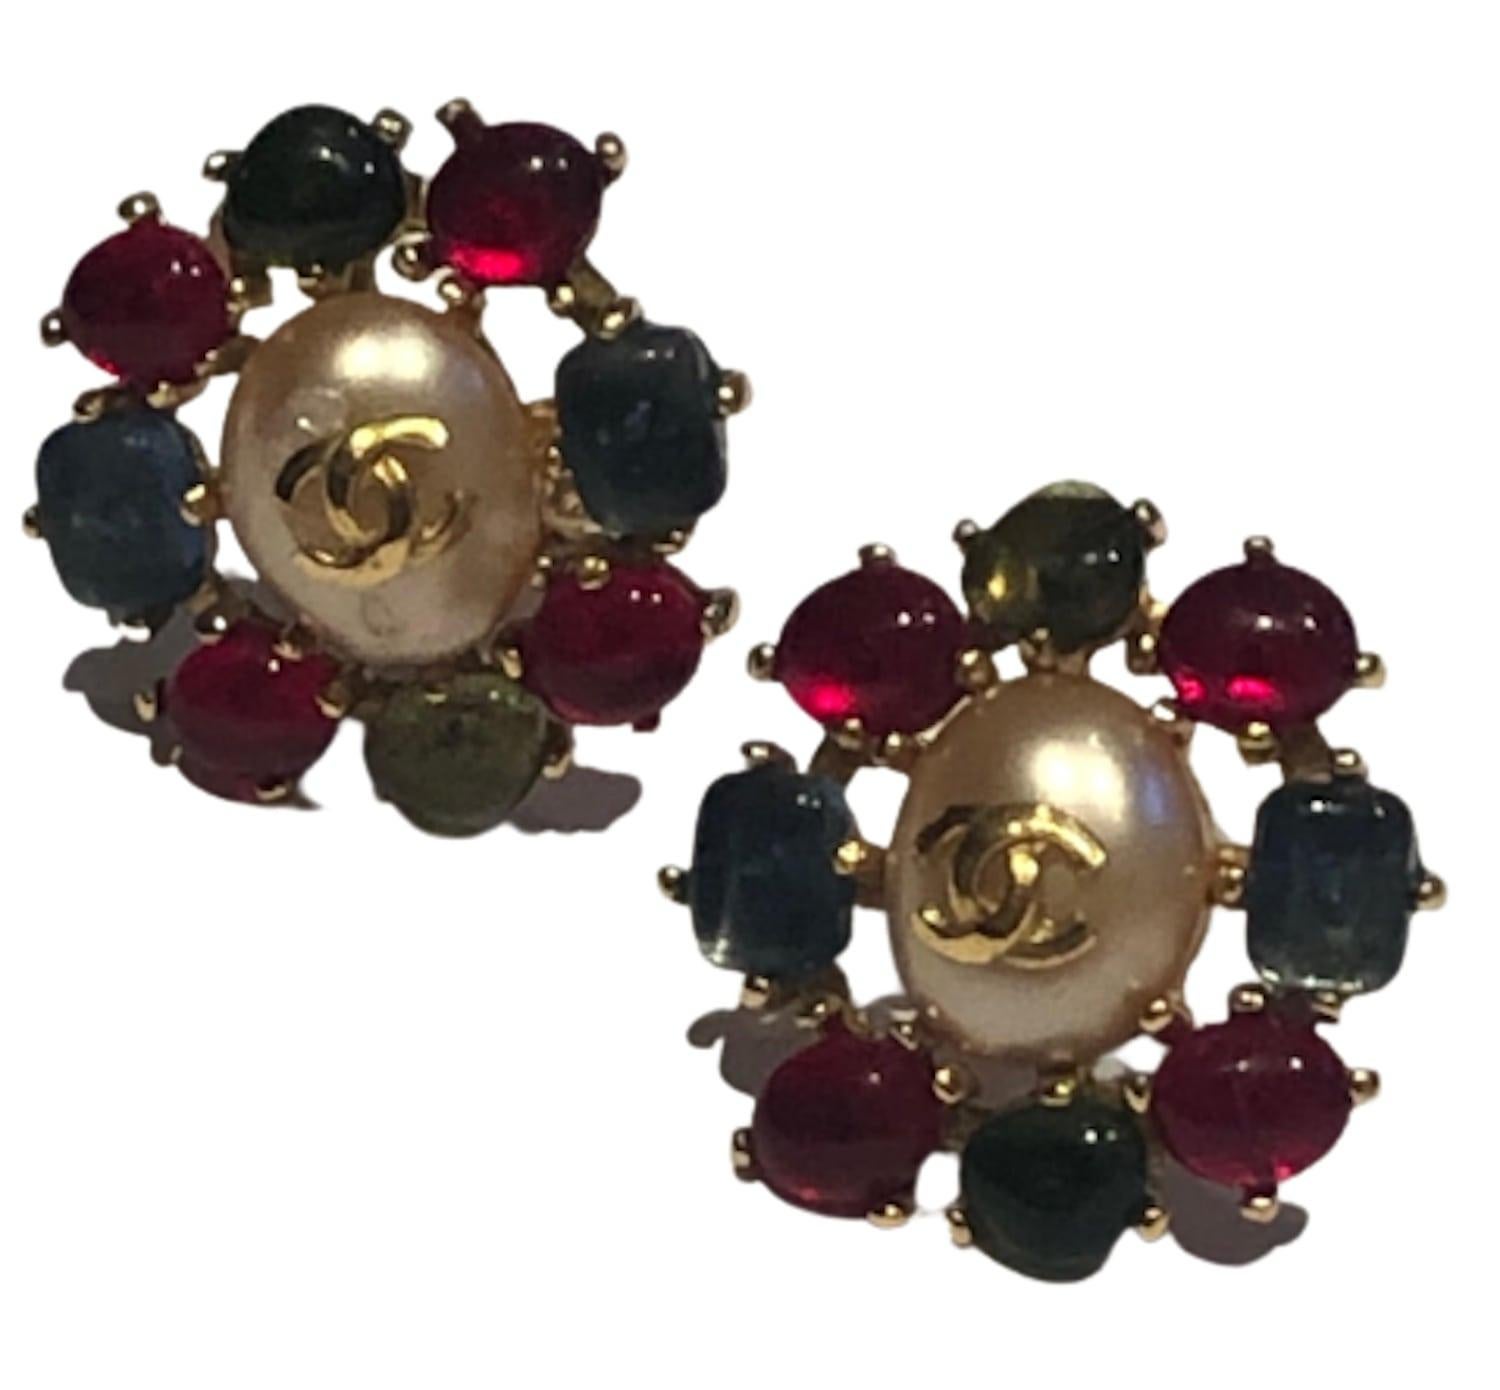 Boucles d'oreilles vintage Chanel Gripoix avec logo CC en perles rouges, vertes et bleues, circa 1997
Superbes boucles d'oreilles à clip Chanel en perles CC, datant de l'automne 1997. Ces magnifiques boucles d'oreilles sont fabriquées à la main avec